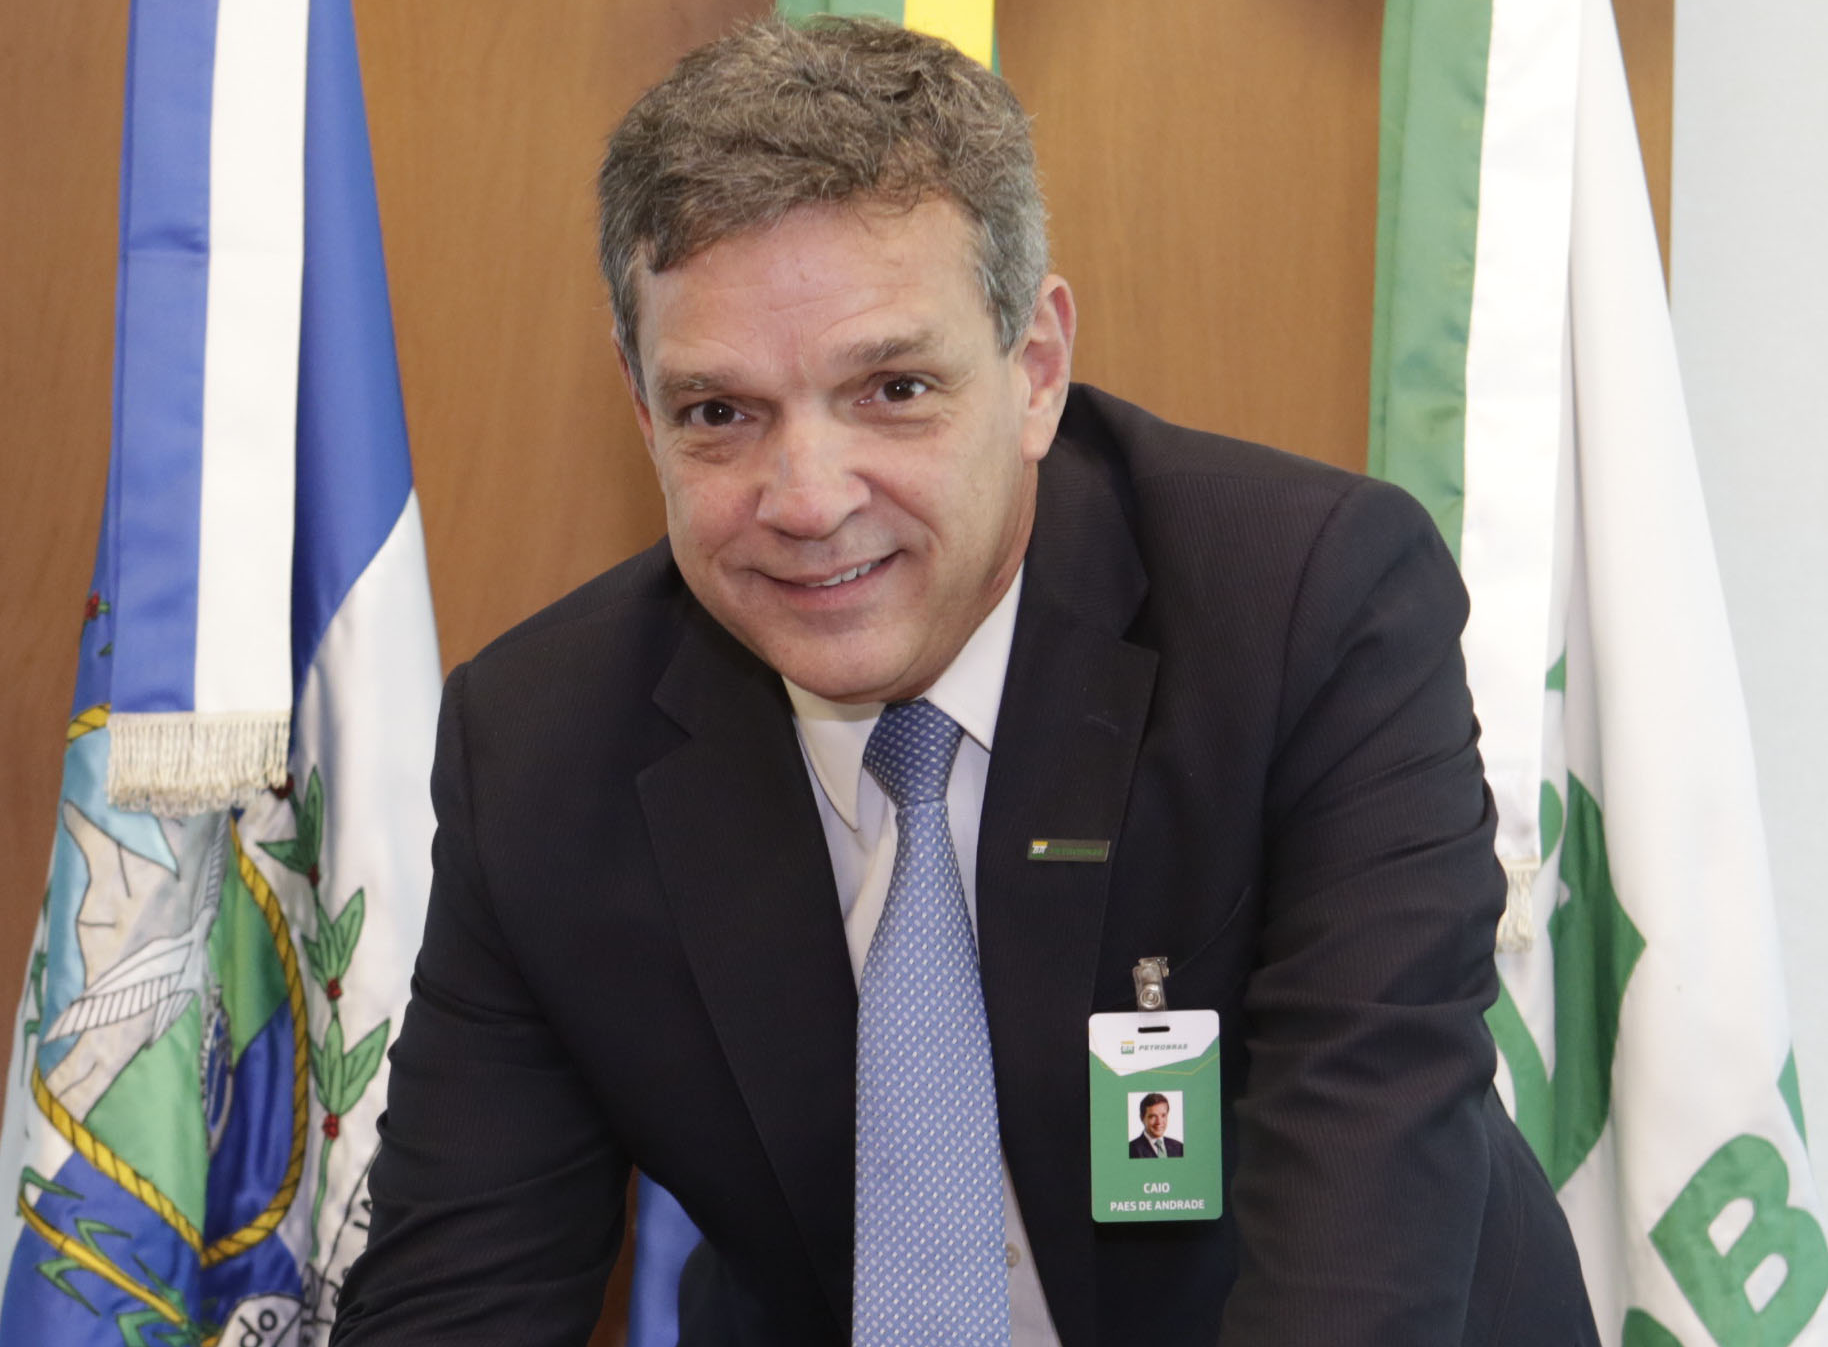 Caio Paes de Andrade, presidente da Petrobras (Foto: Francisco Alves de Souza/Agência Petrobras)